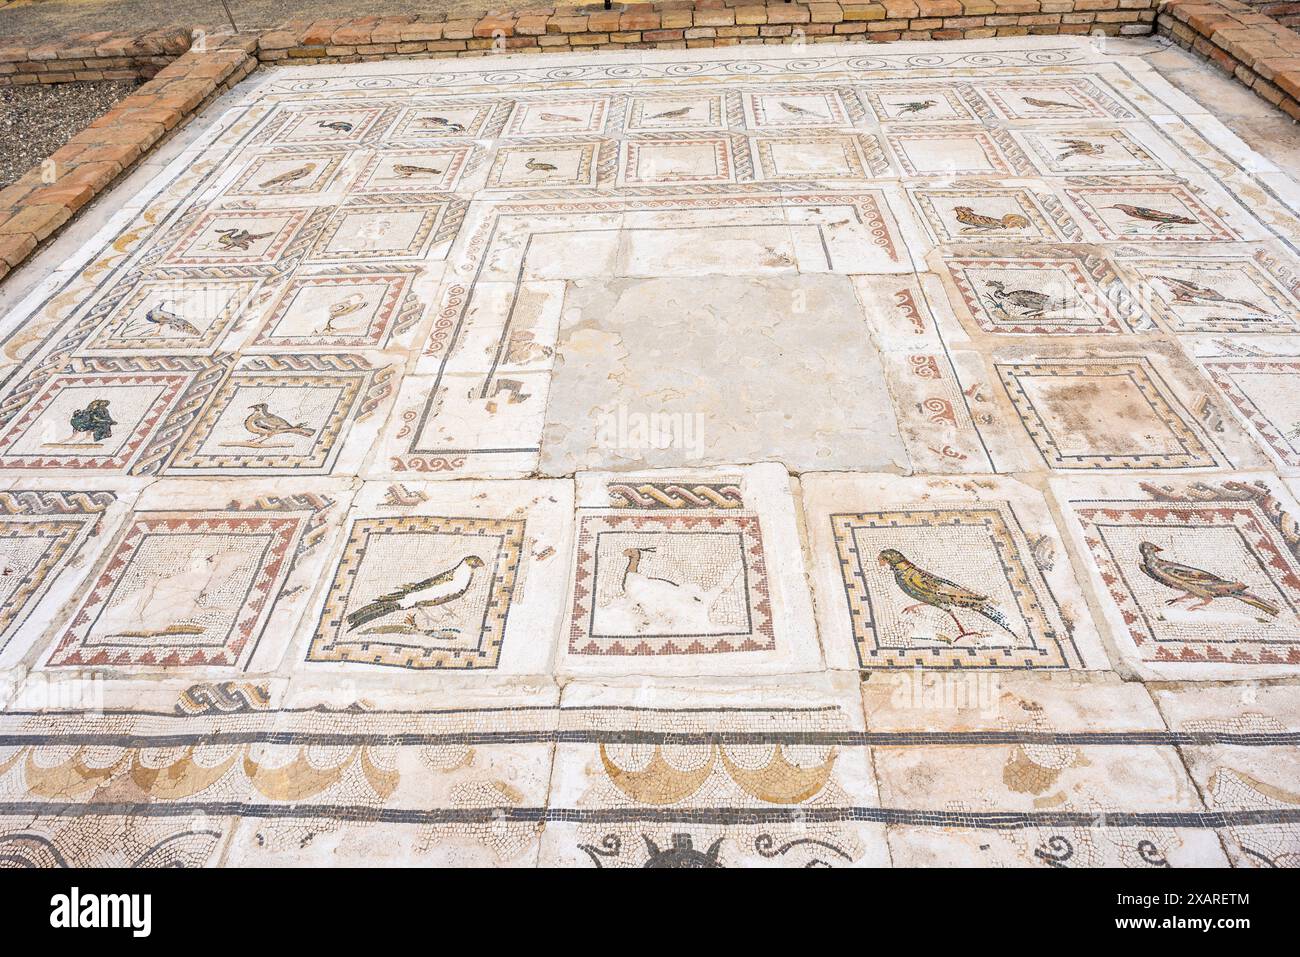 Italica, maison d'oiseaux, ancienne ville romaine, 206 av. J.-C., Andalousie, Espagne. Banque D'Images